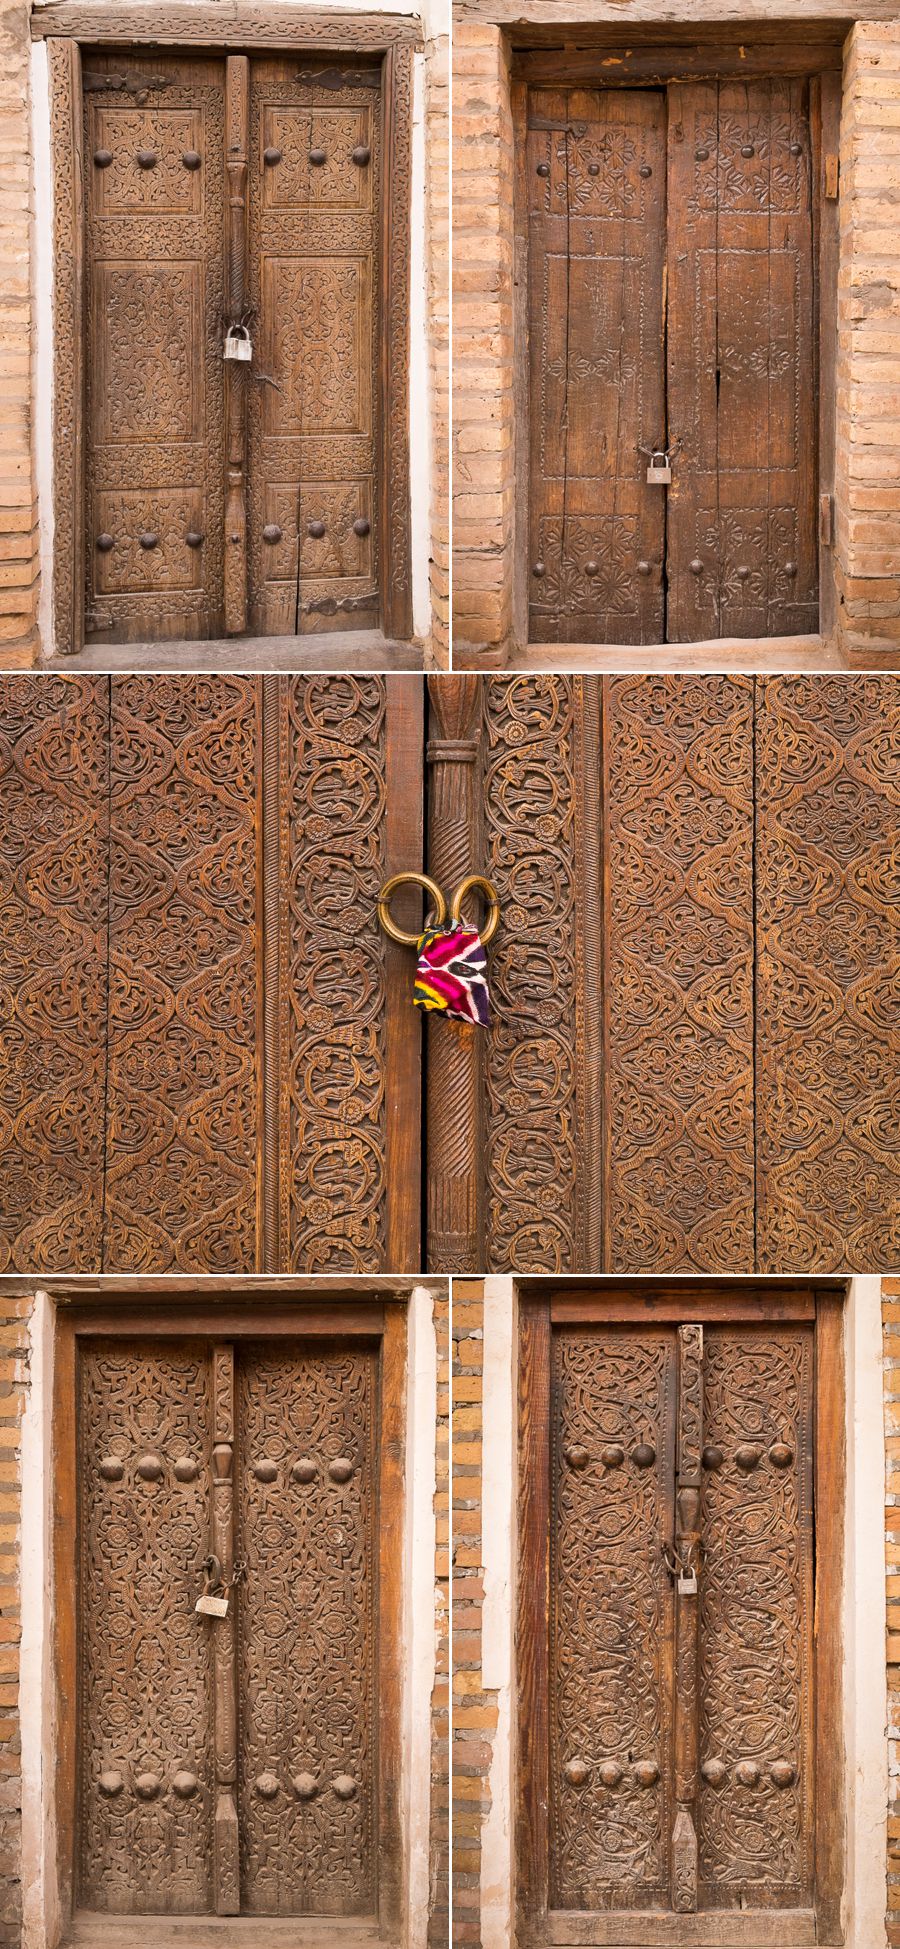 Highly decorated doors - Khiva - Uzbekistan